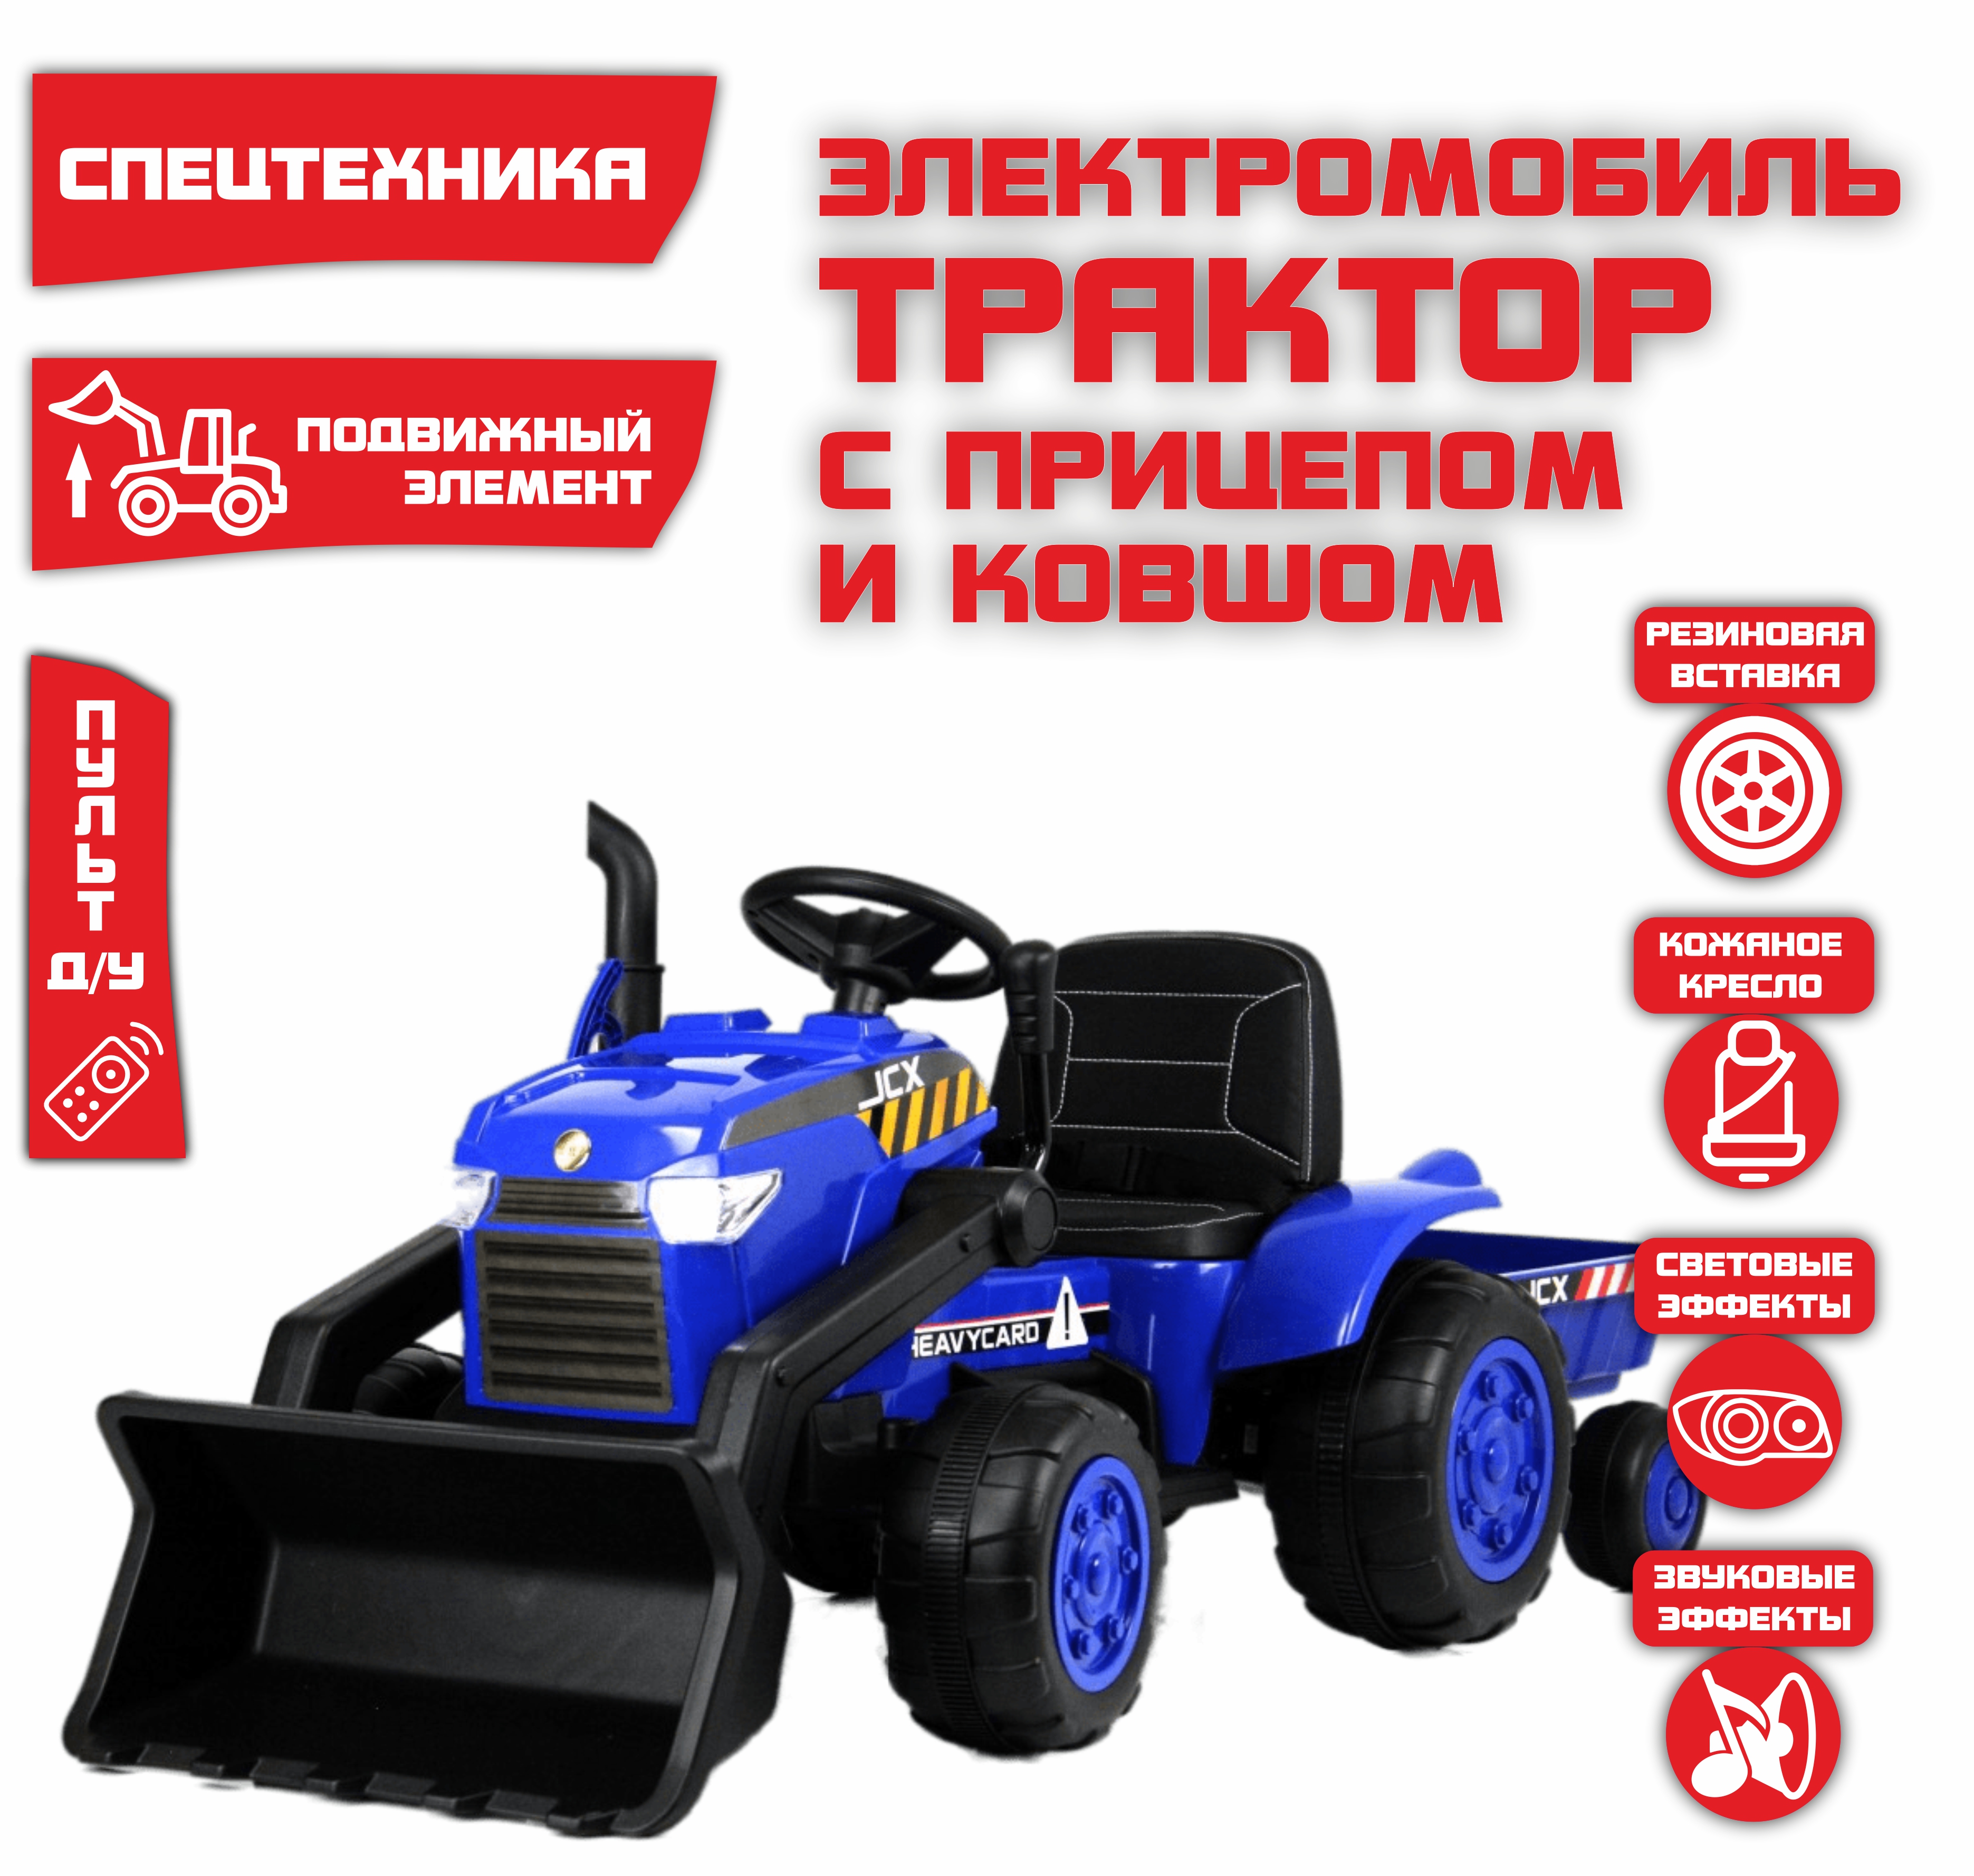 Электромобиль детский NOVAKIDS трактор с прицепом S617 Синий + Пульт синий электромобиль трактор с прицепом novakids jcb красный пульт